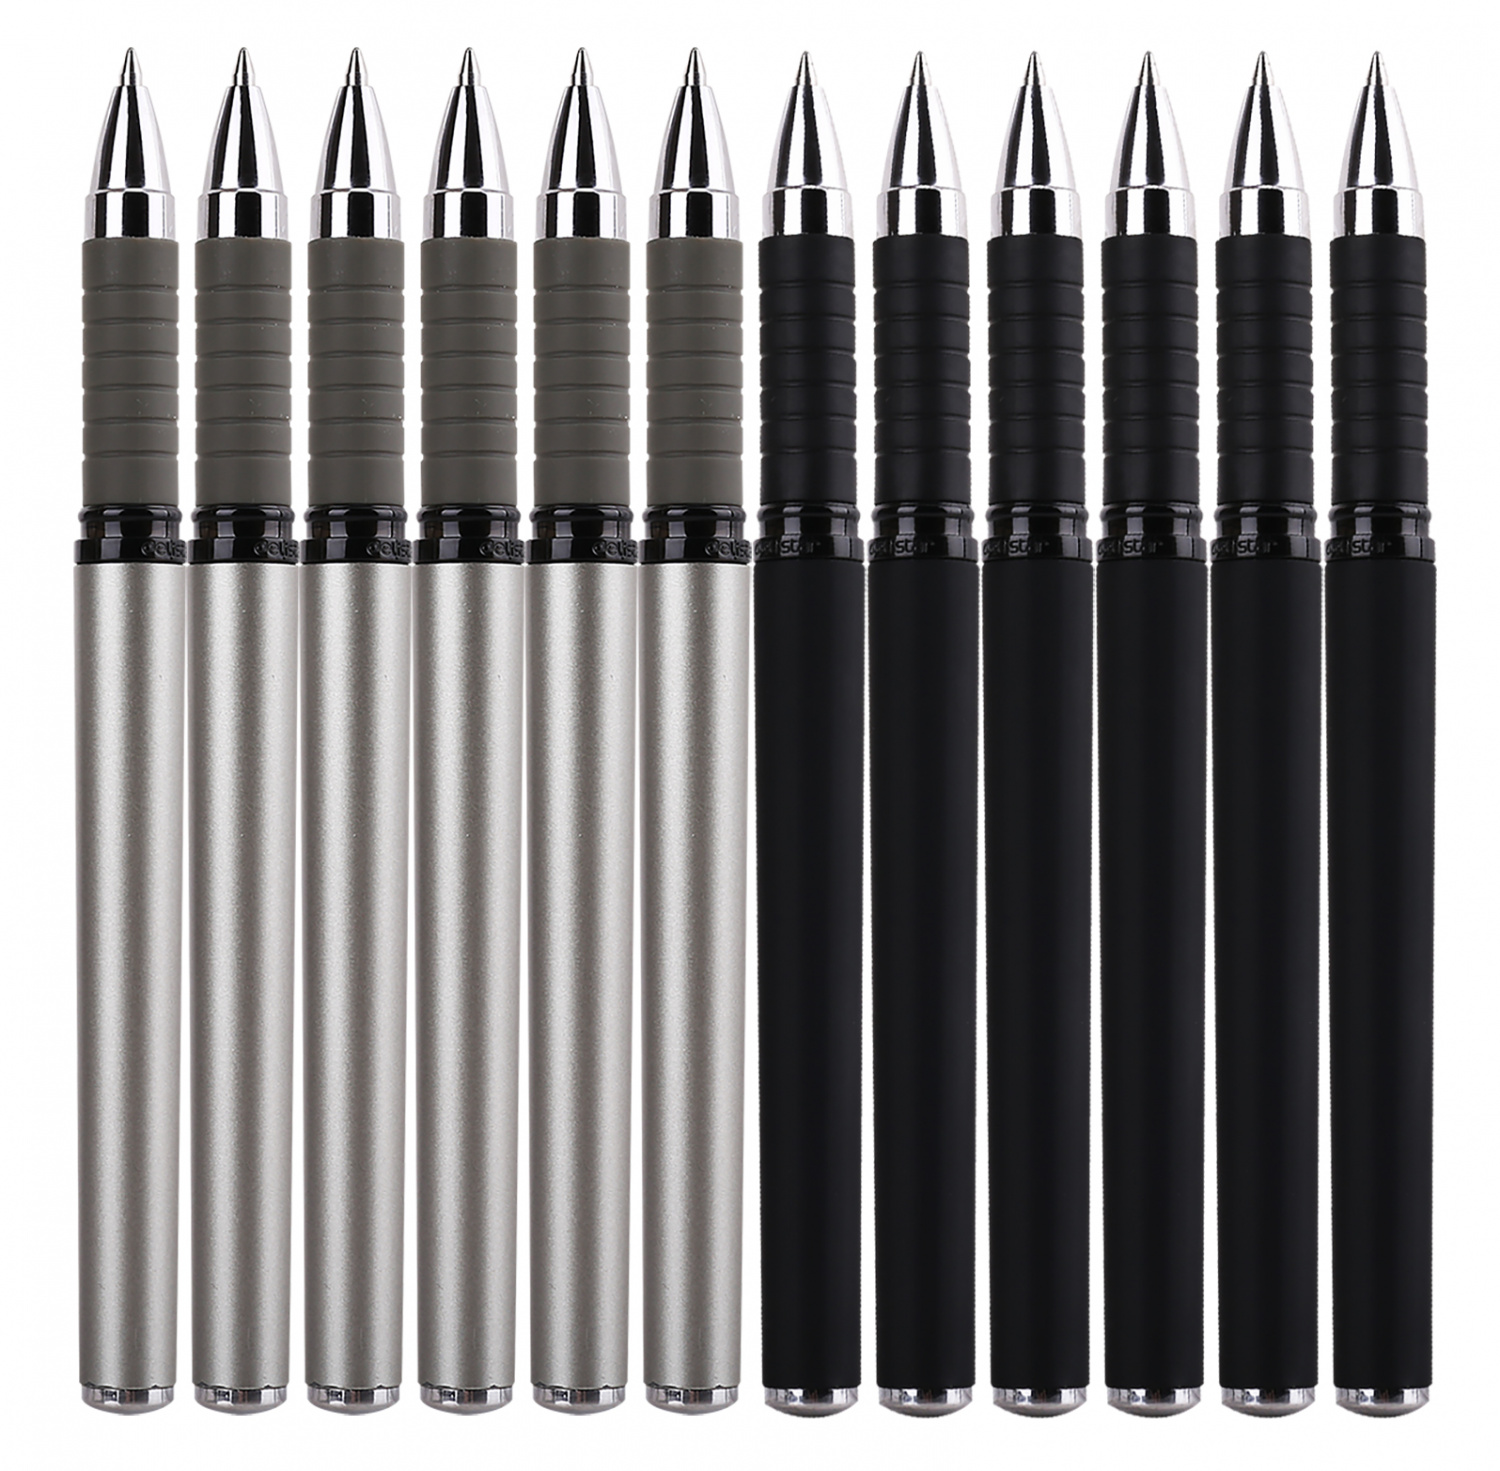 Ручка гелев. Deli S26 серый d=0.7мм черн. черн. линия 0.55мм